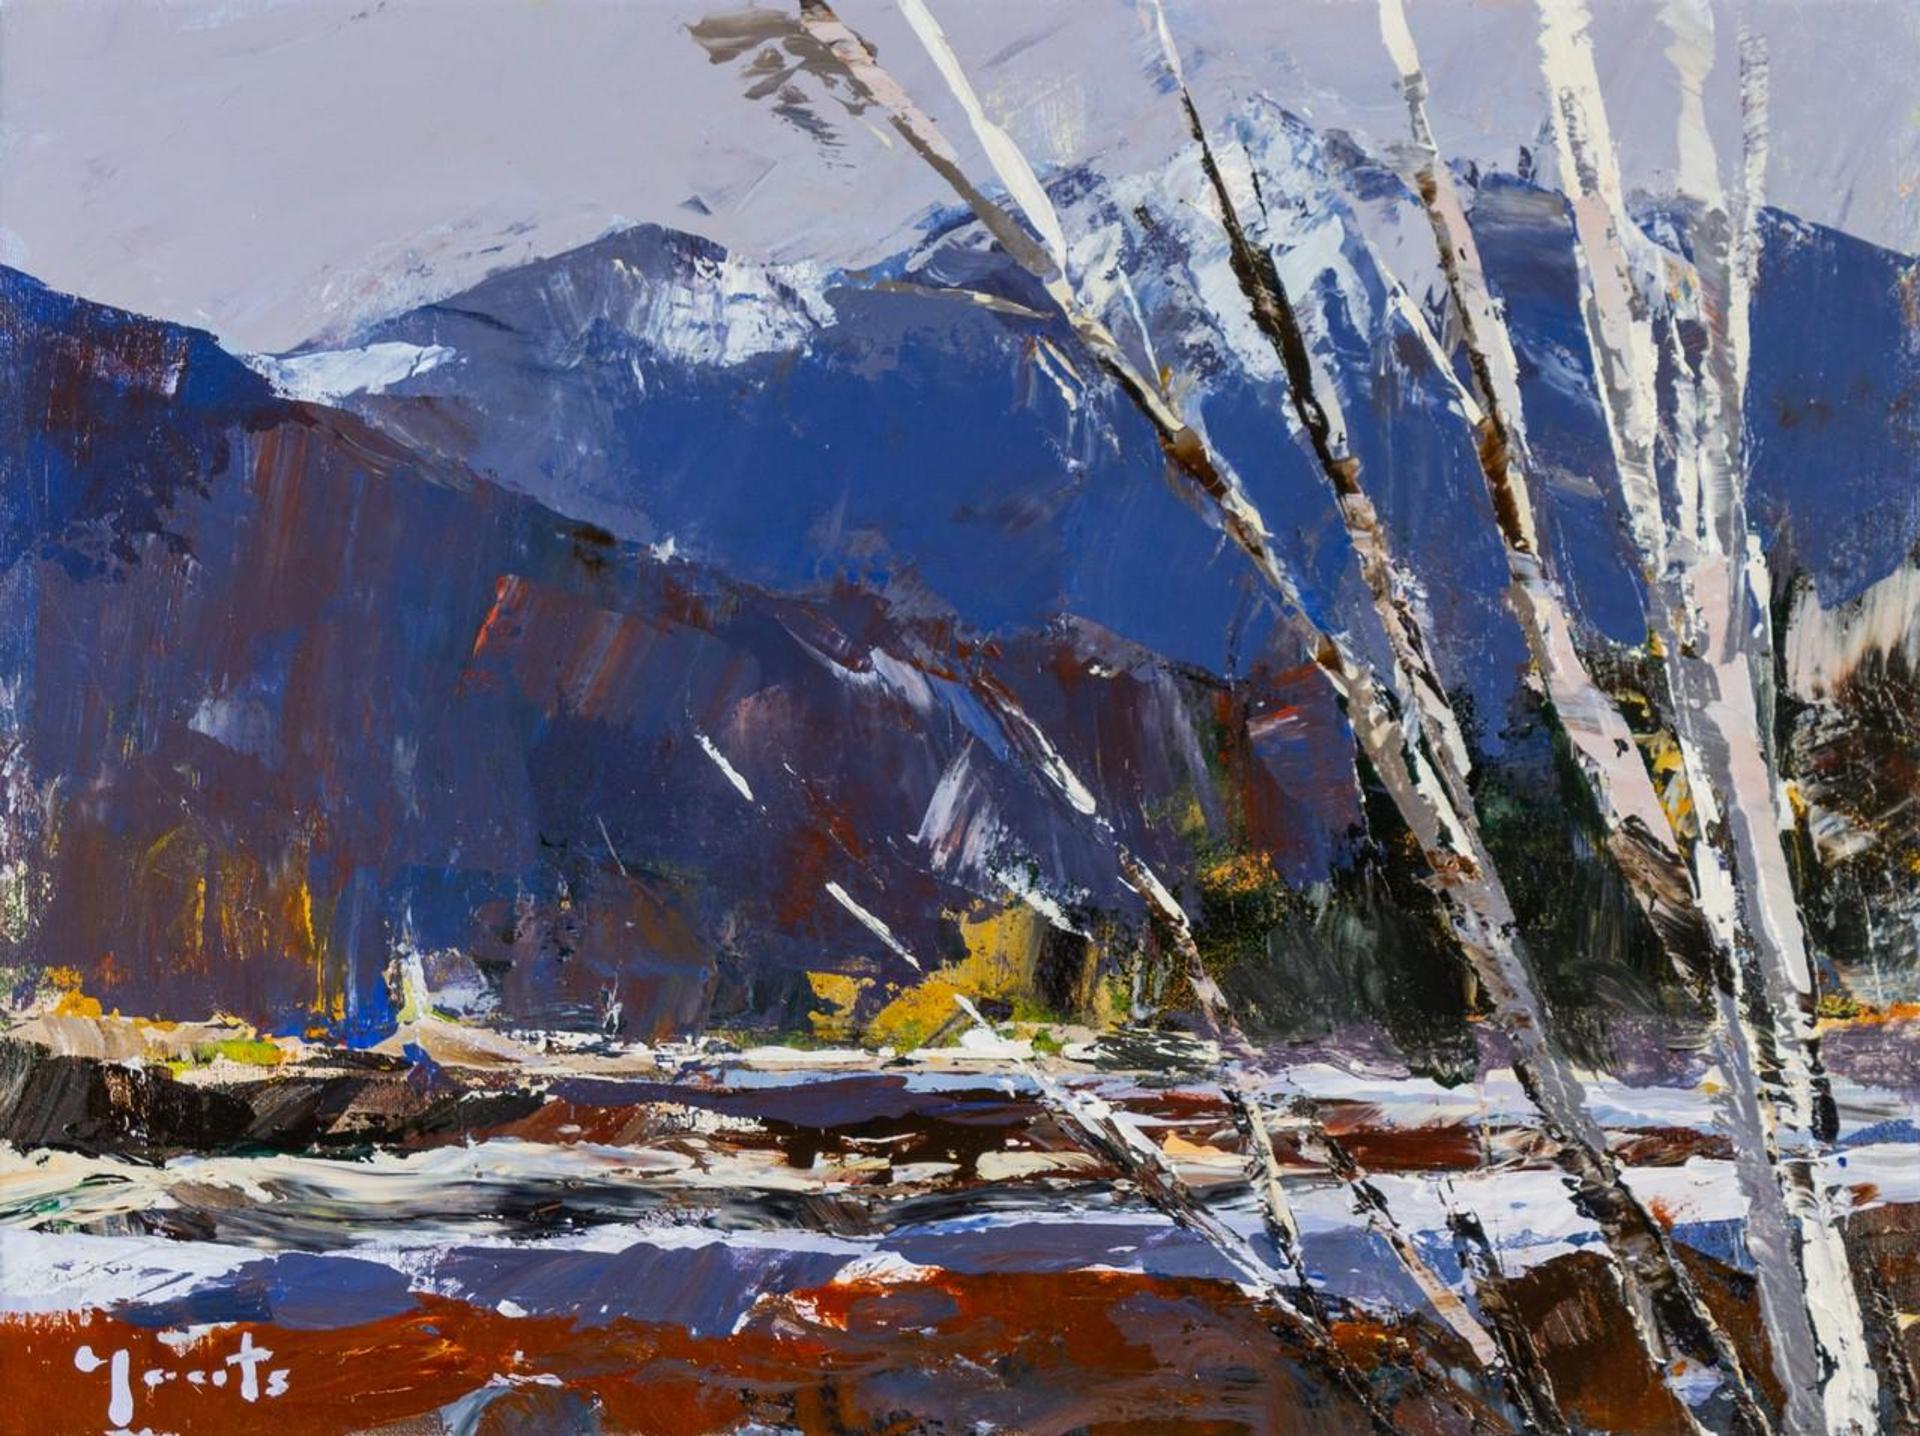 Craig Yeats (1951) - Mamquam River Rapids - Squamish